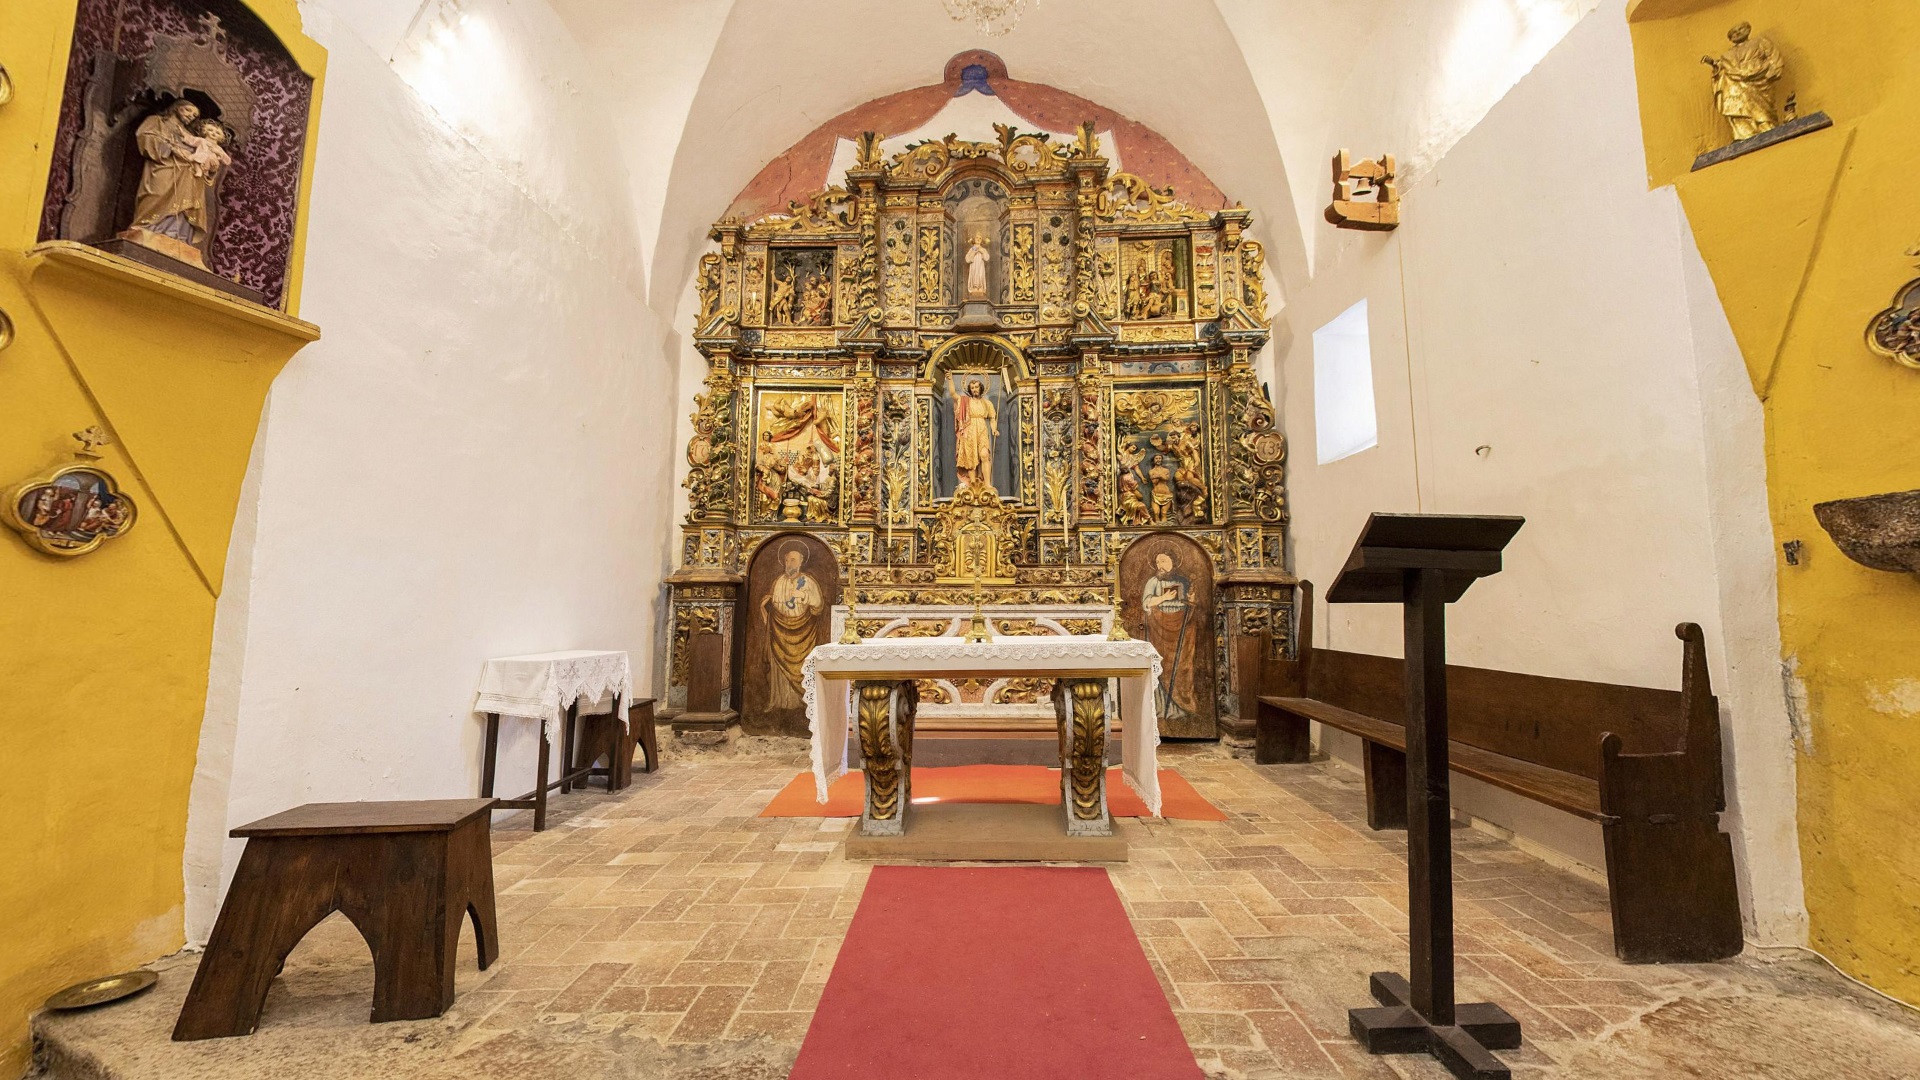 Vista interior de l'església de Sant Joan de Riu de Cerdanya amb el retaule barroc que presideix l'església.